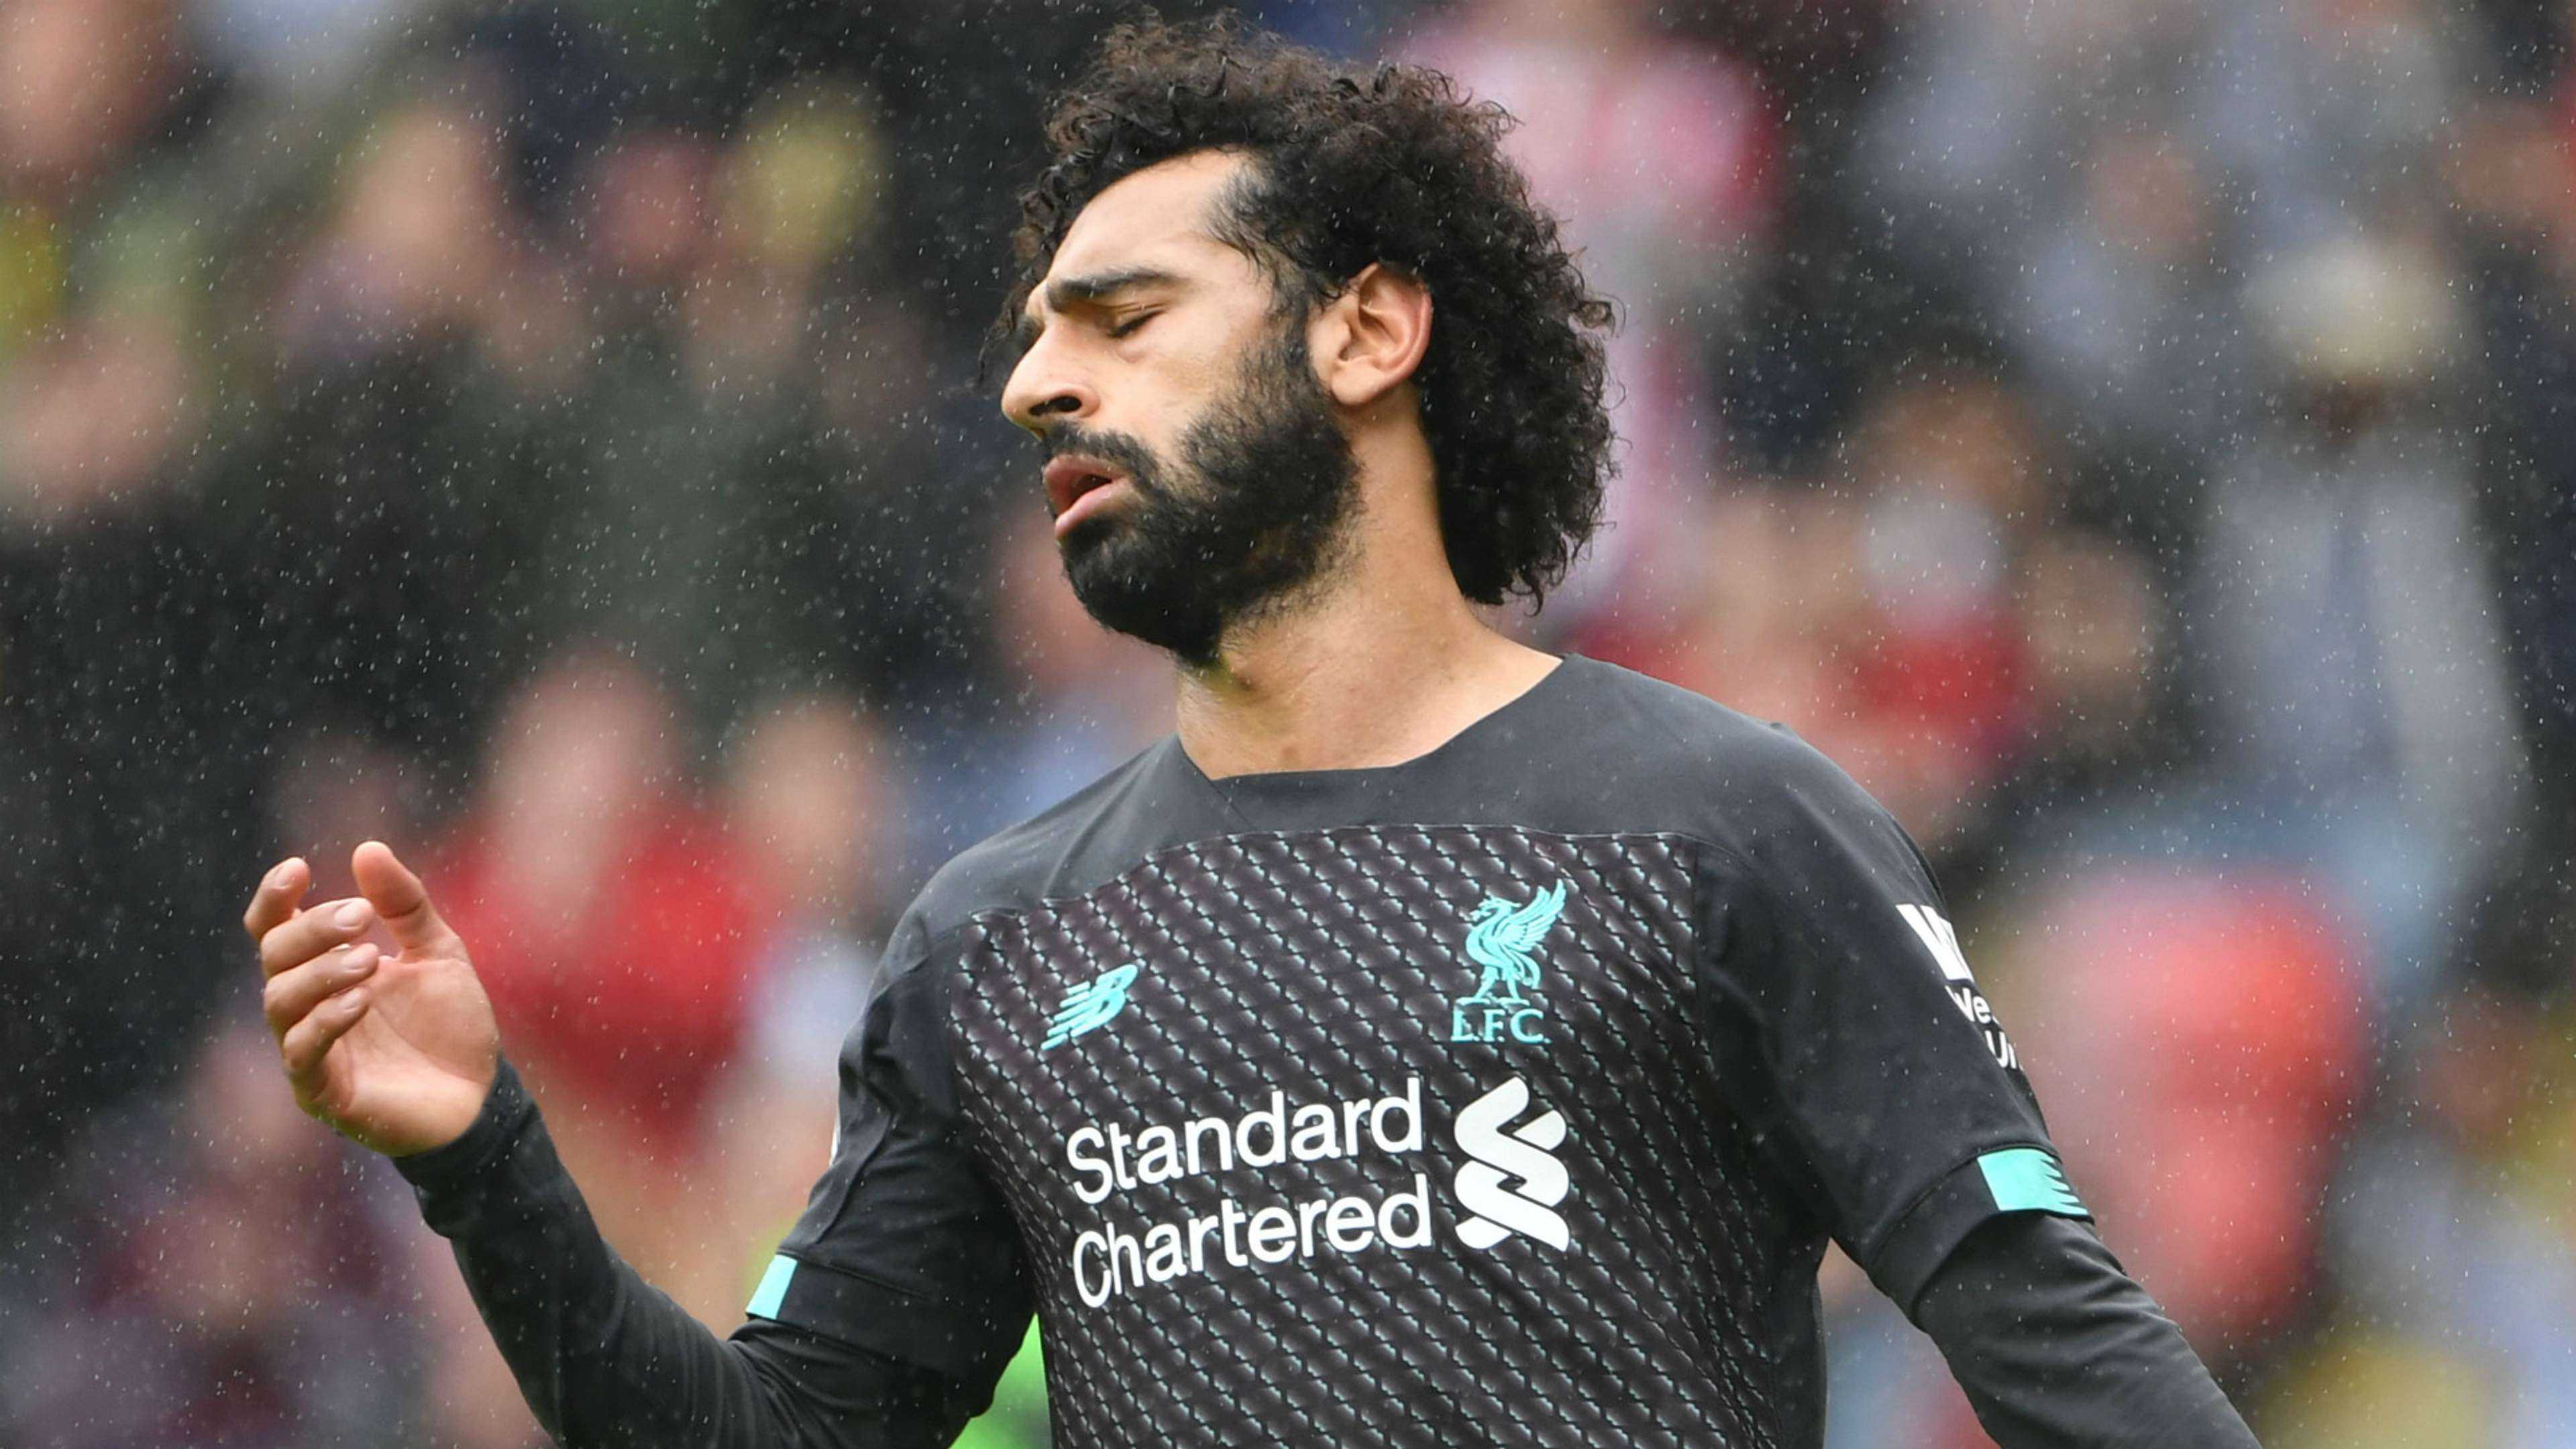 Mohamed Salah Liverpool 2019-20